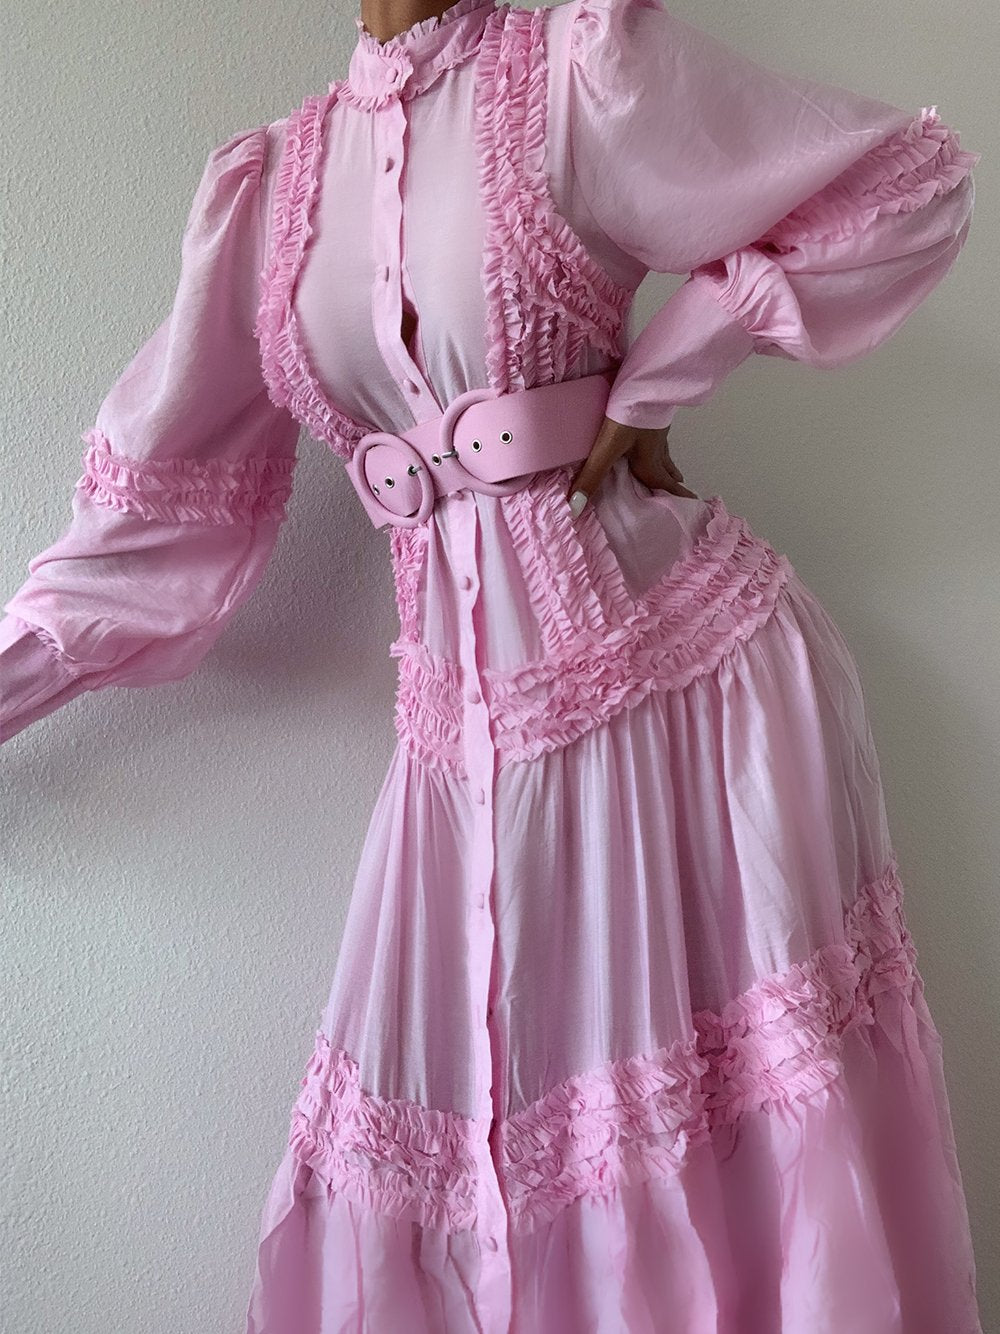 TRIELLA Maxi Dress in Pink